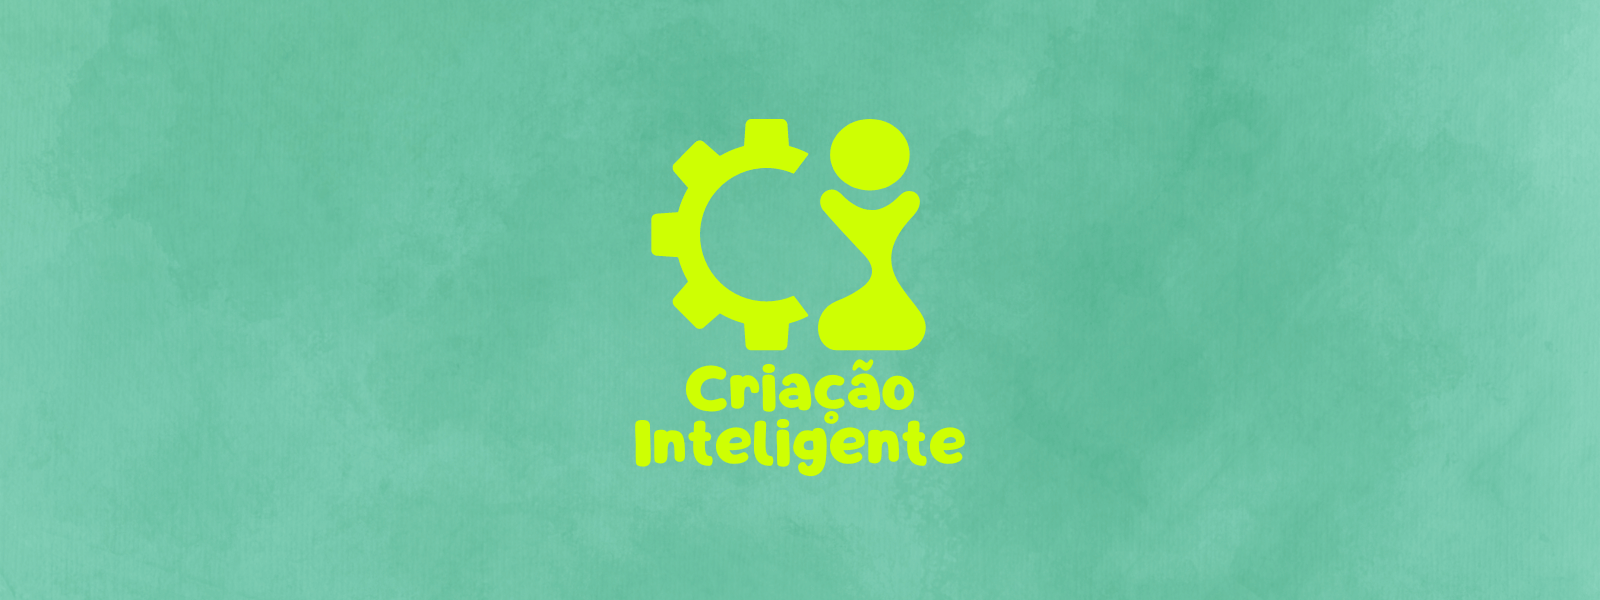 Criança Inteligente (1600 x 600 px)